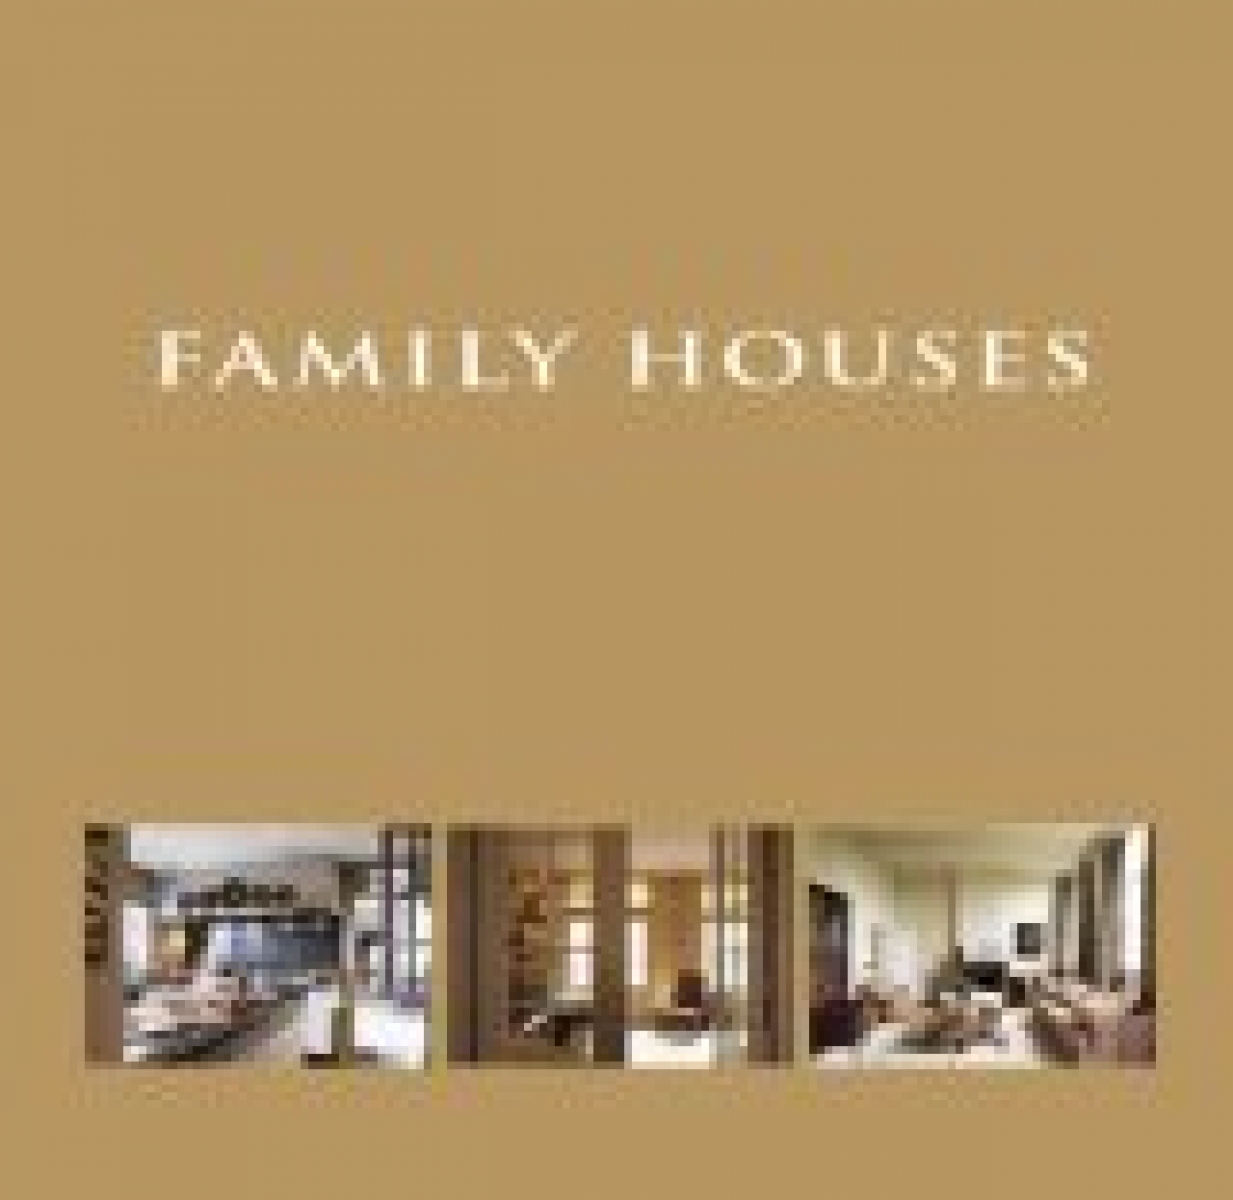 Wim P. Family Houses 